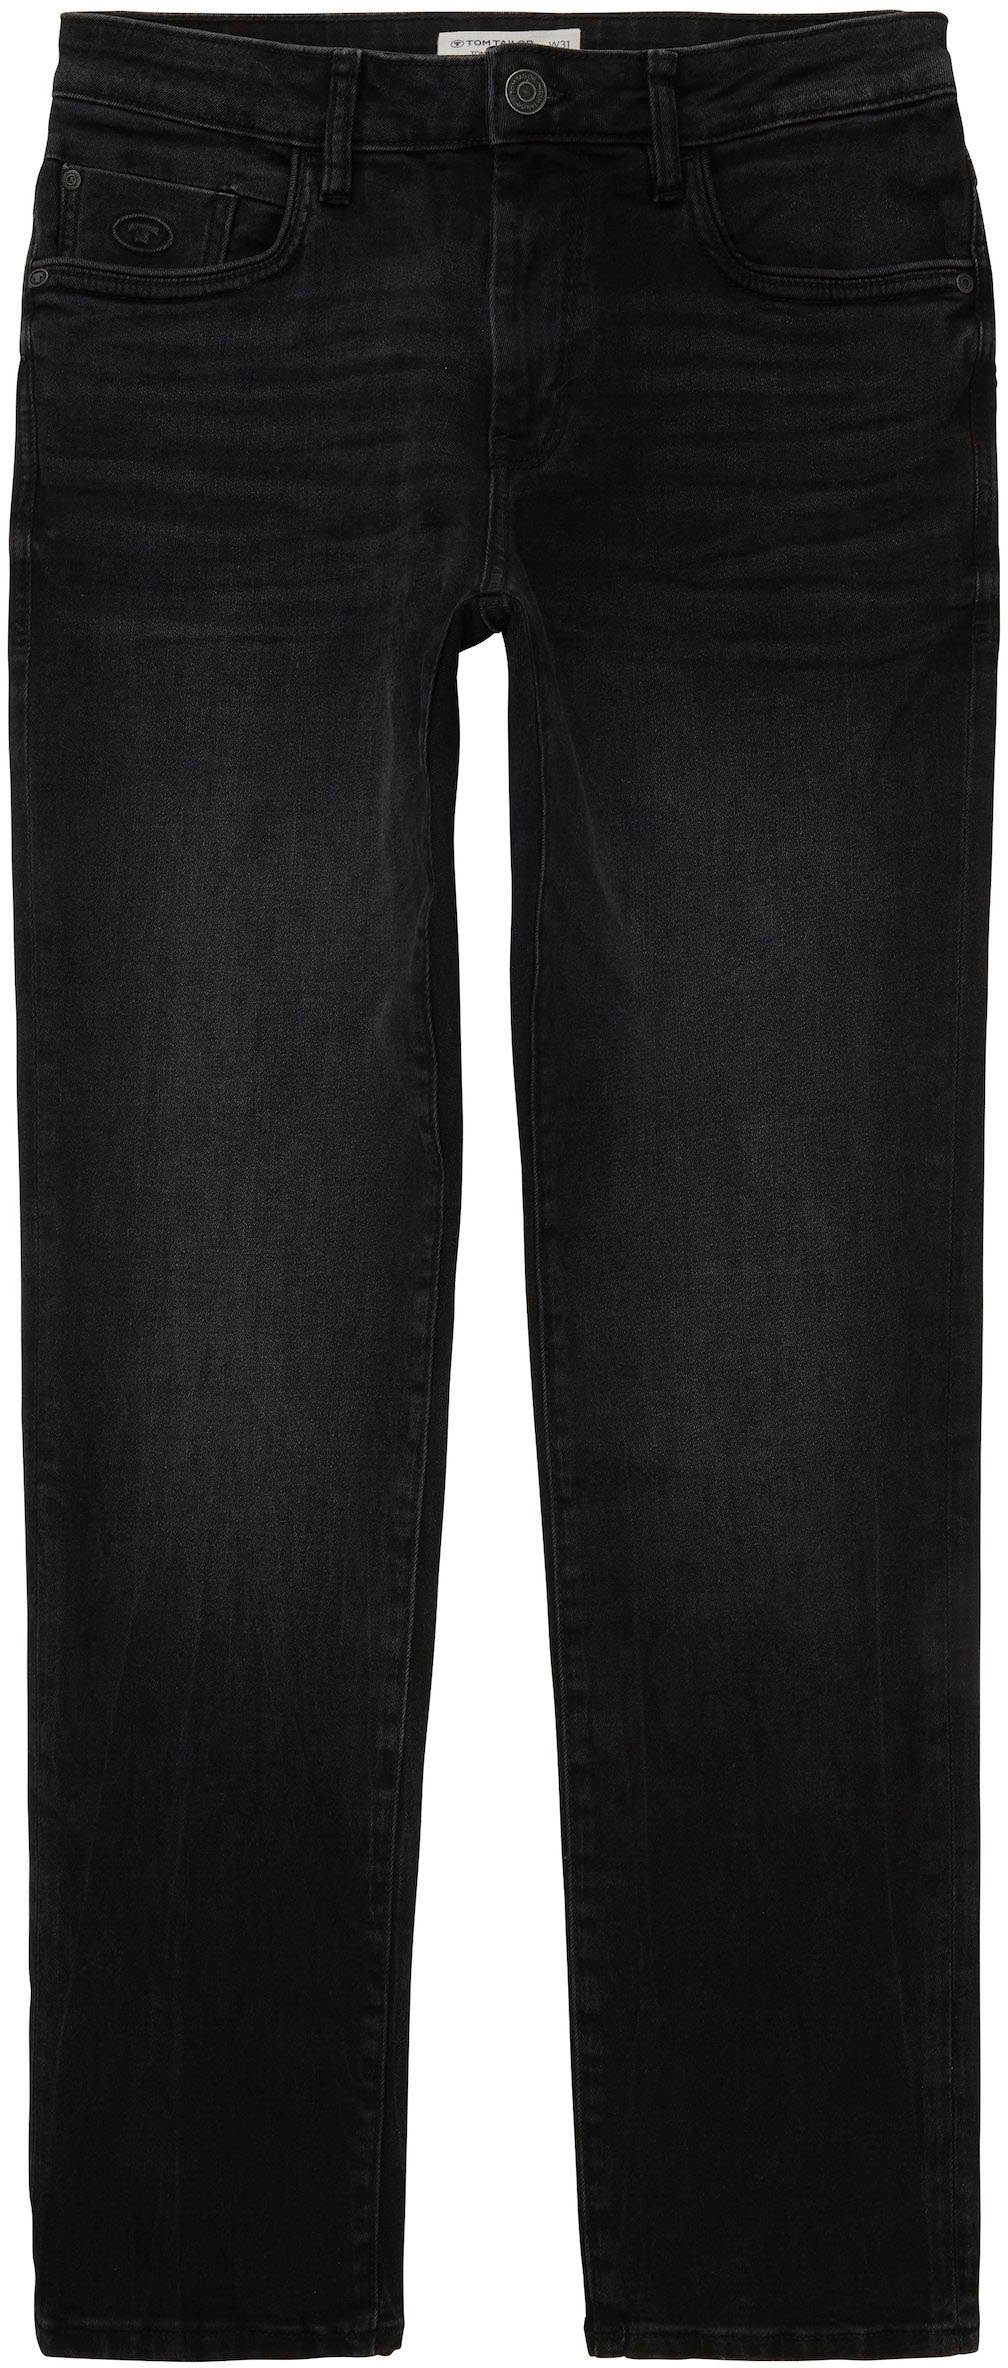 TOM TAILOR 5-Pocket-Jeans used dark Reißverschluss mit Josh